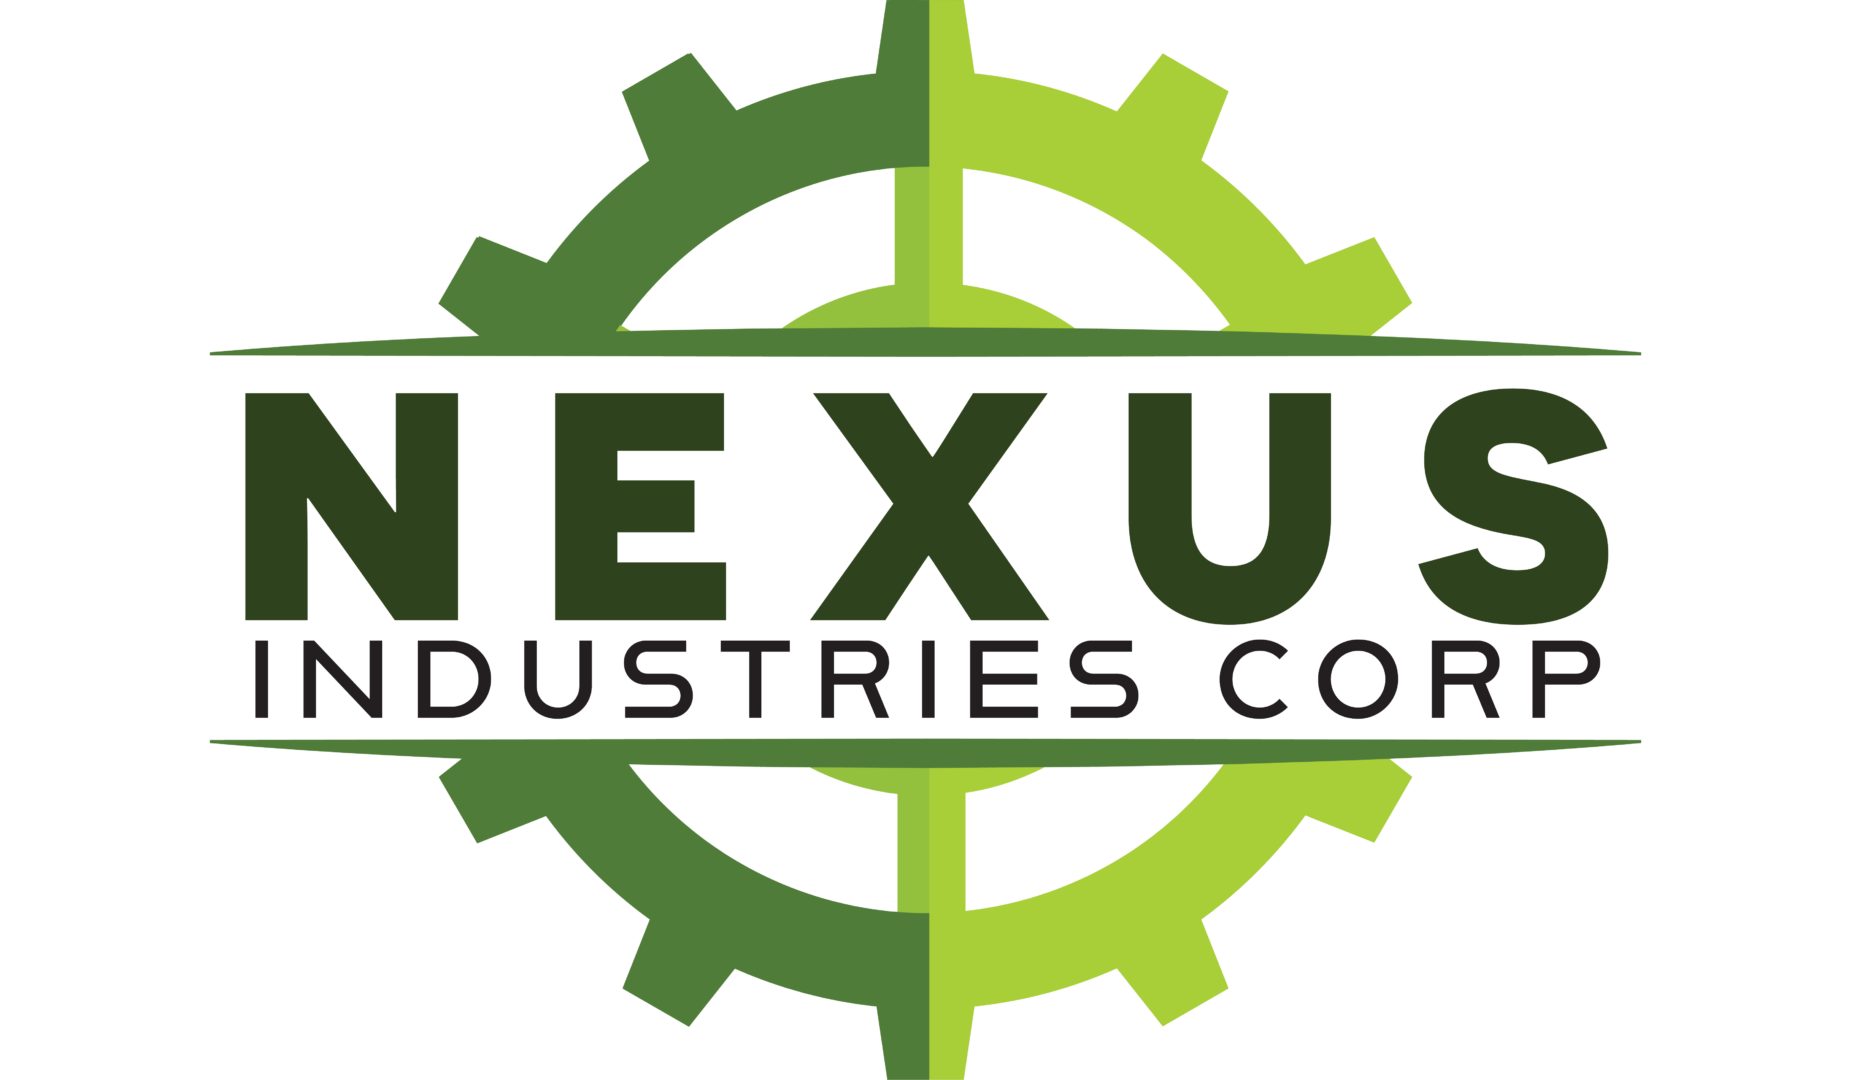 Nexus Industries Corp